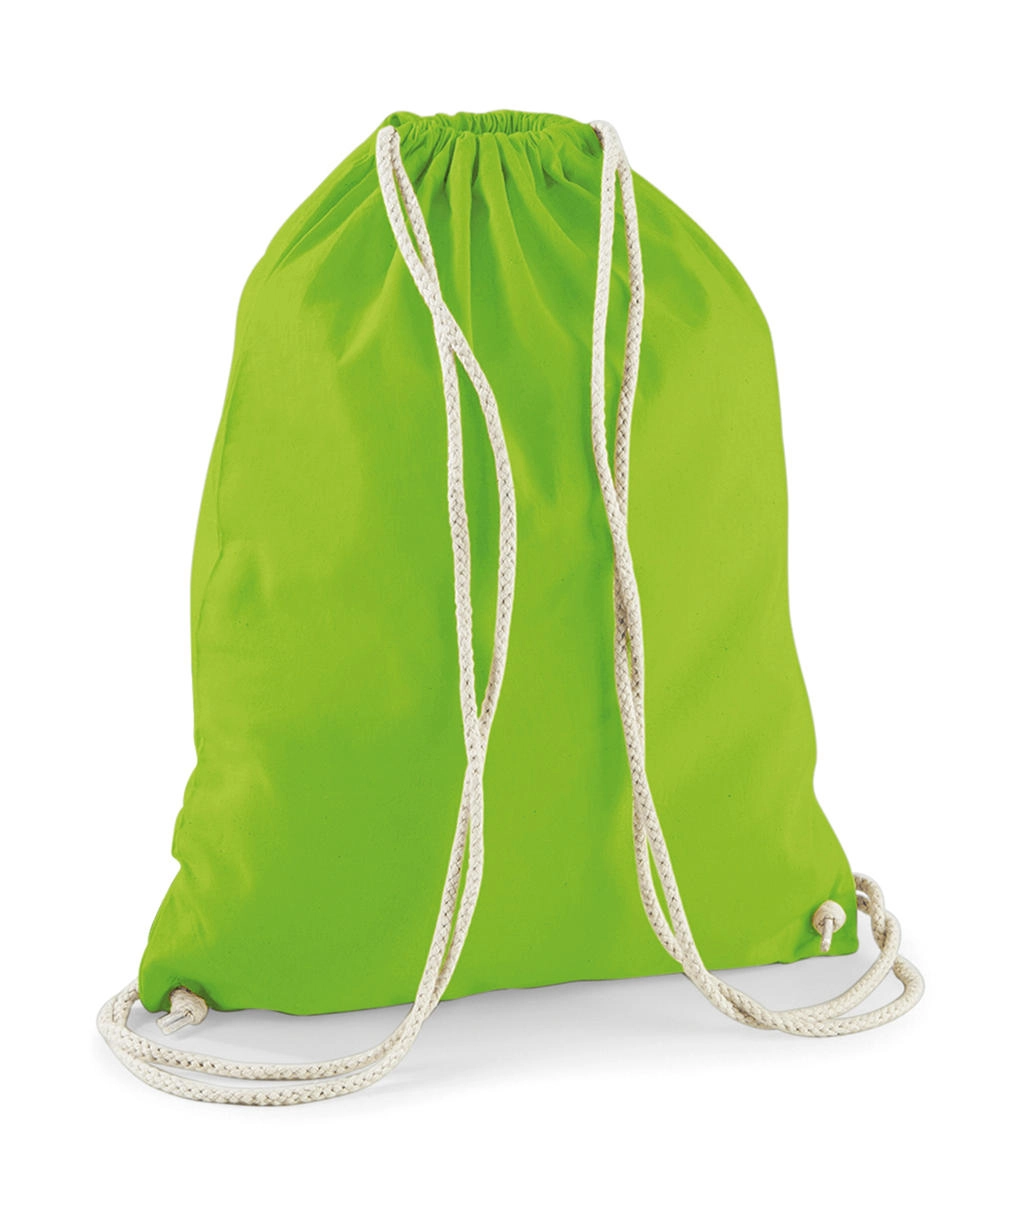 Cotton Gymsac zum Besticken und Bedrucken in der Farbe Lime Green mit Ihren Logo, Schriftzug oder Motiv.